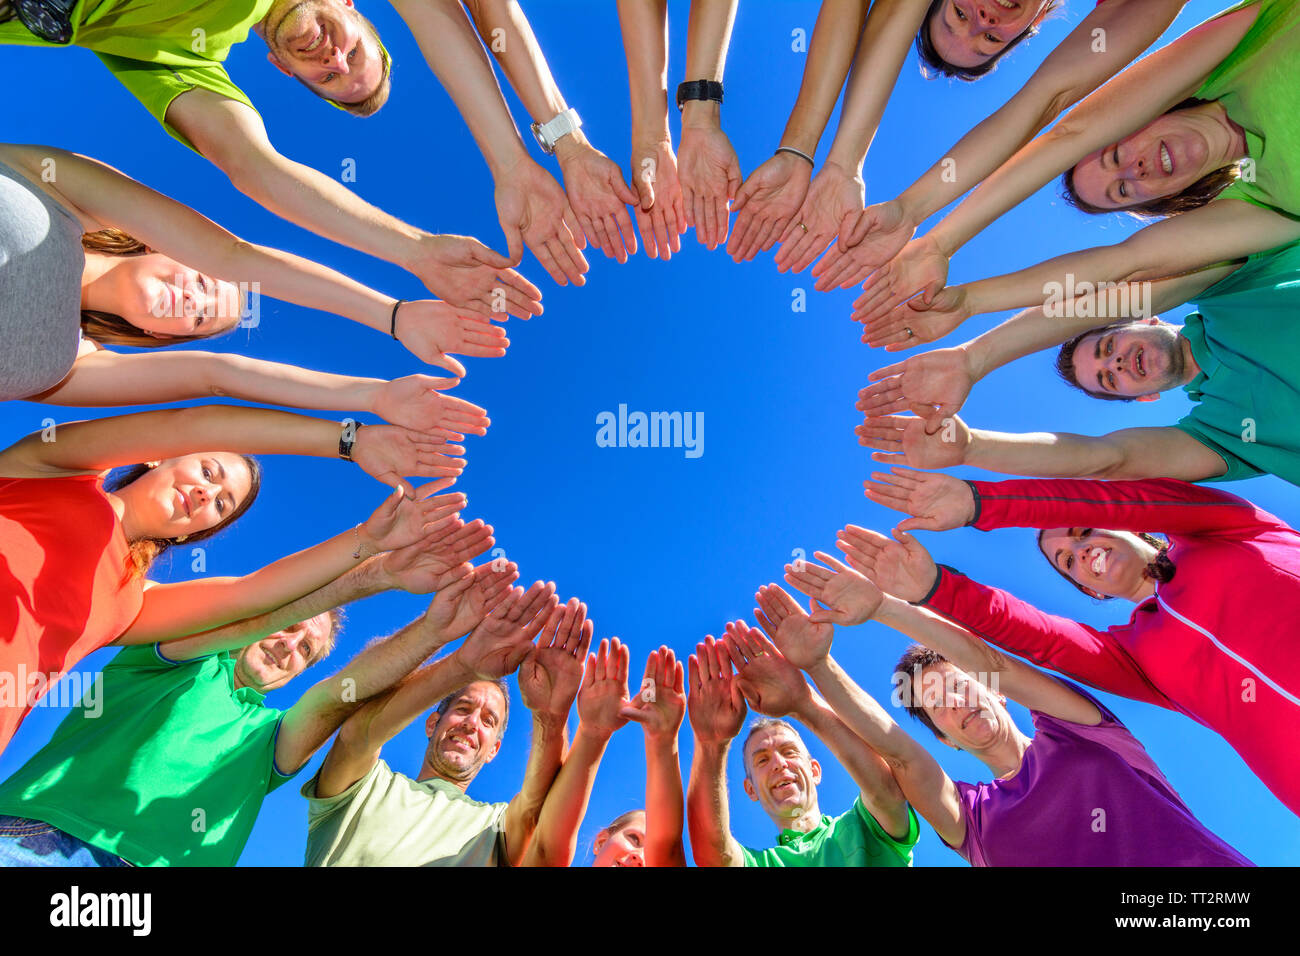 Eine Gruppe von Menschen ihre Verbundenheit demontrating während ein teamtraining in der Natur Stockfoto